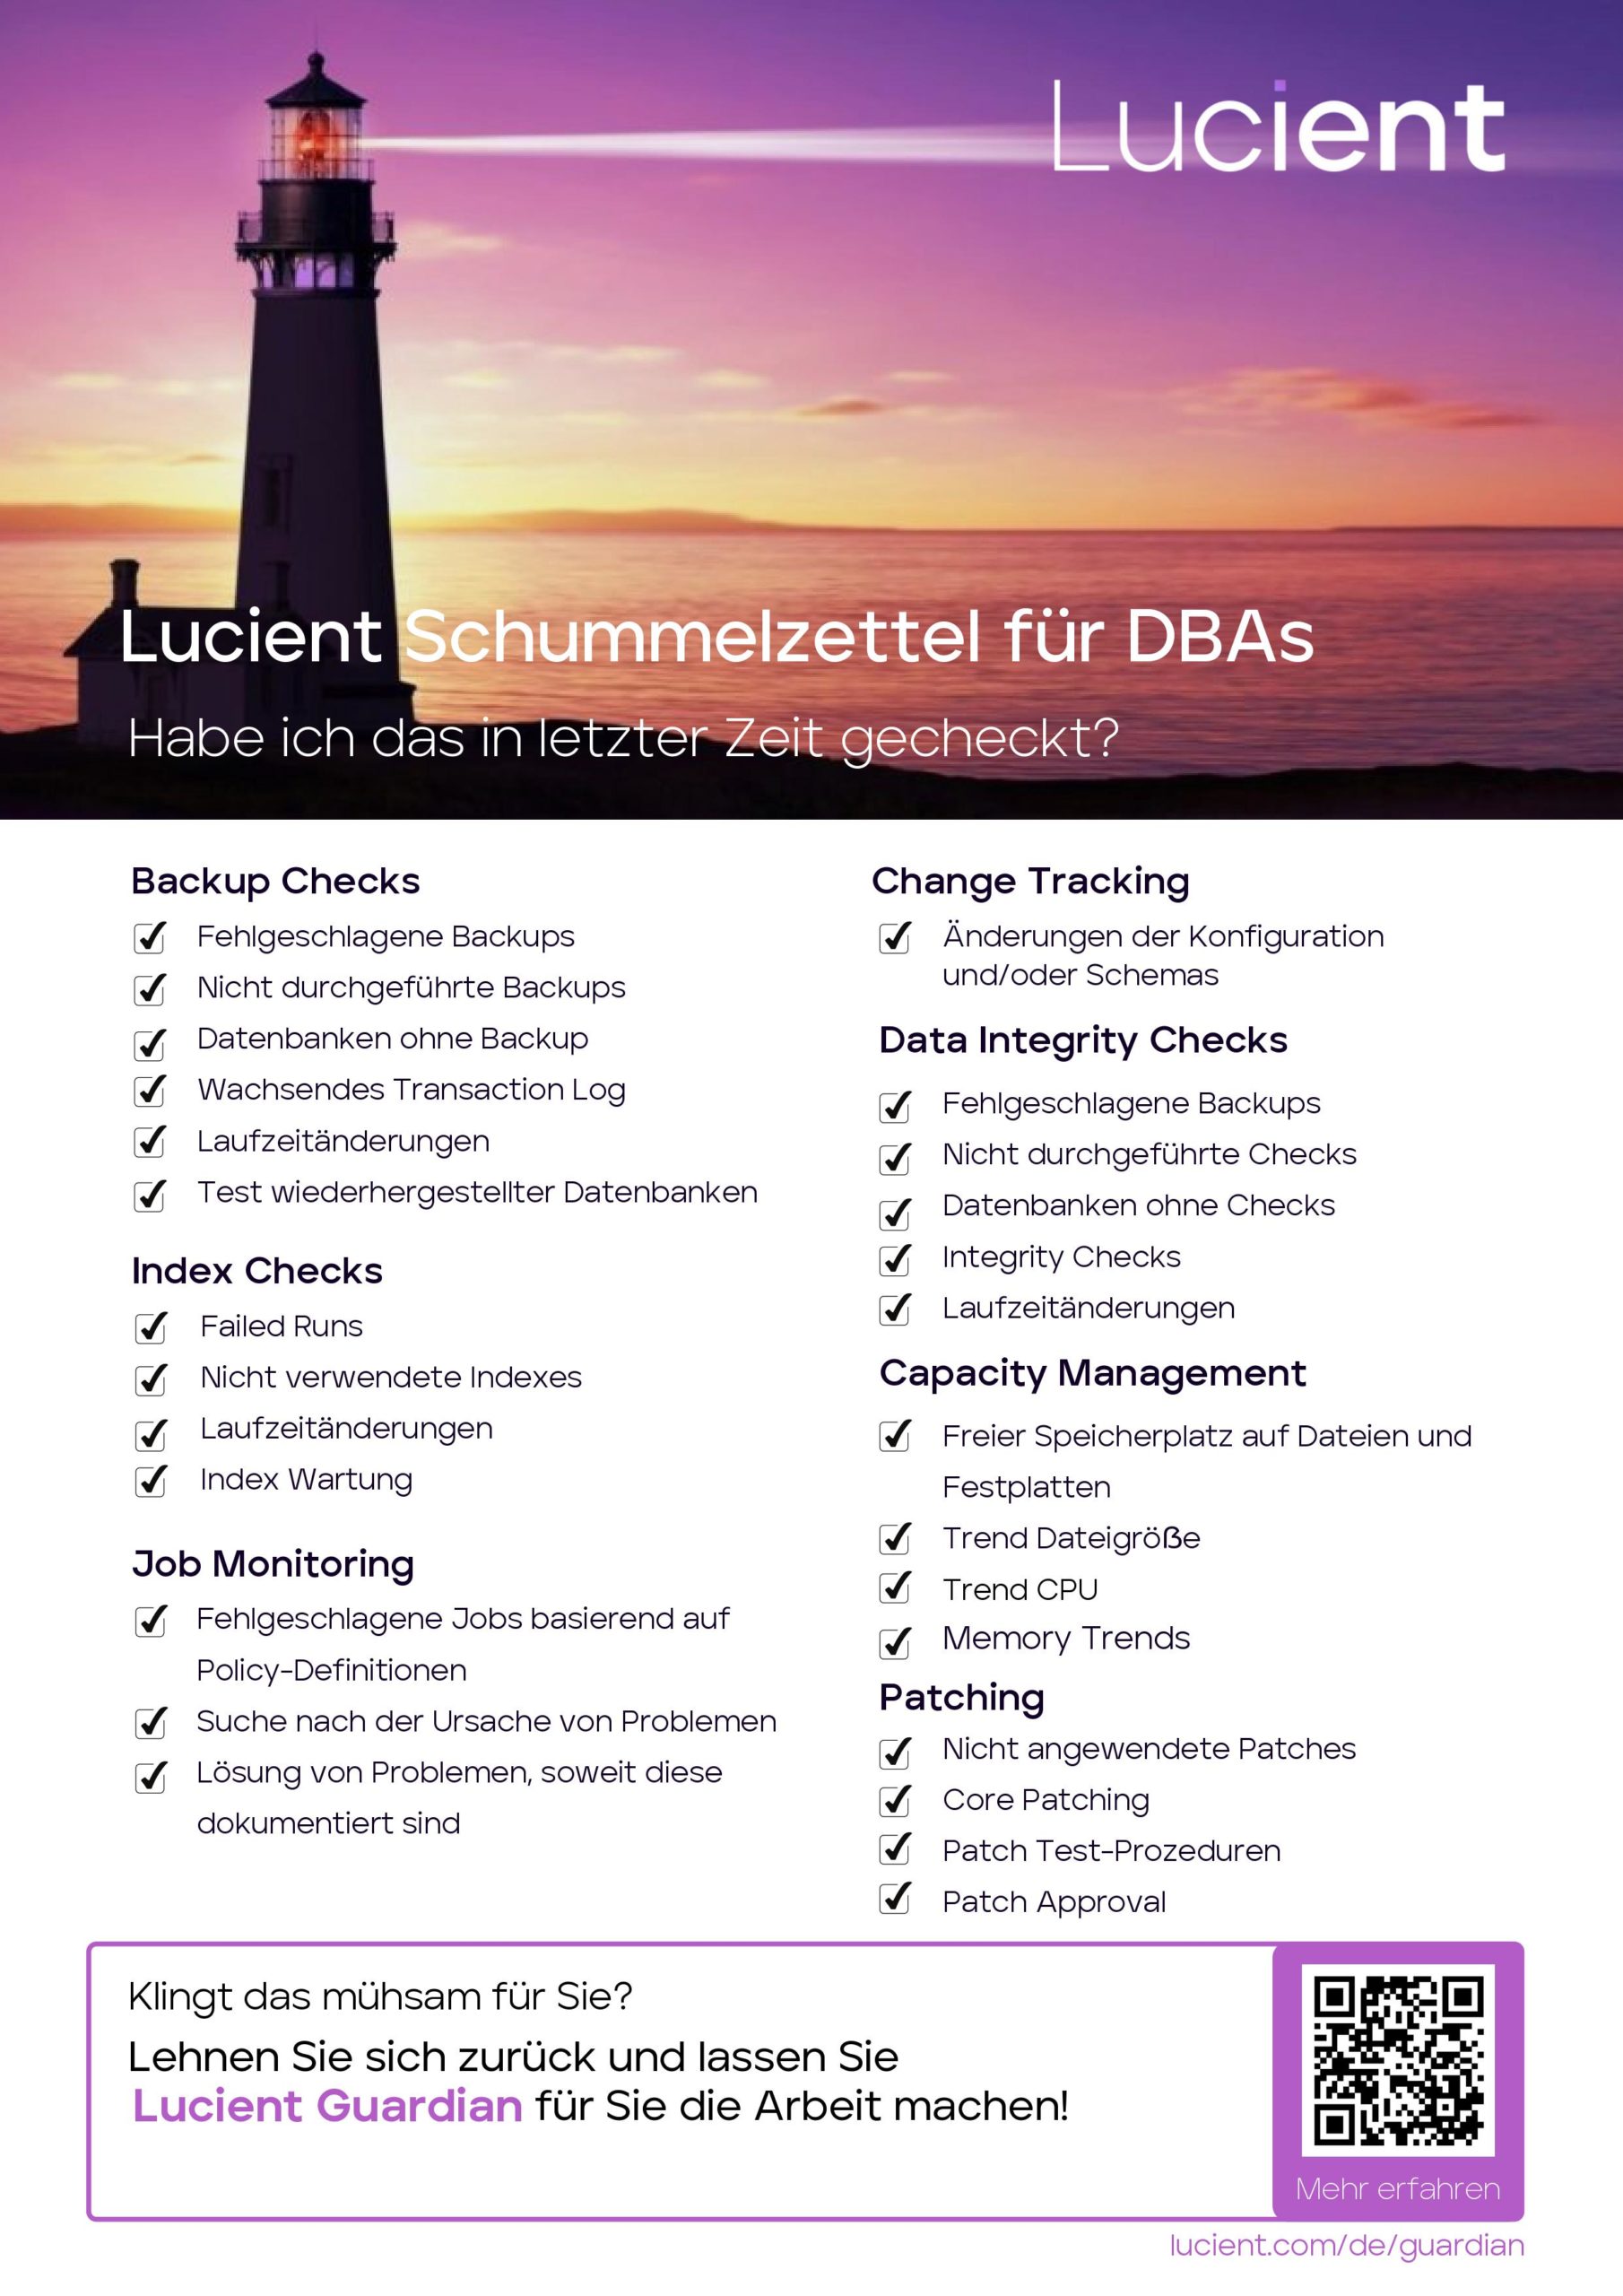 Der Schummelzettel für DBAs – die Lucient Checkliste